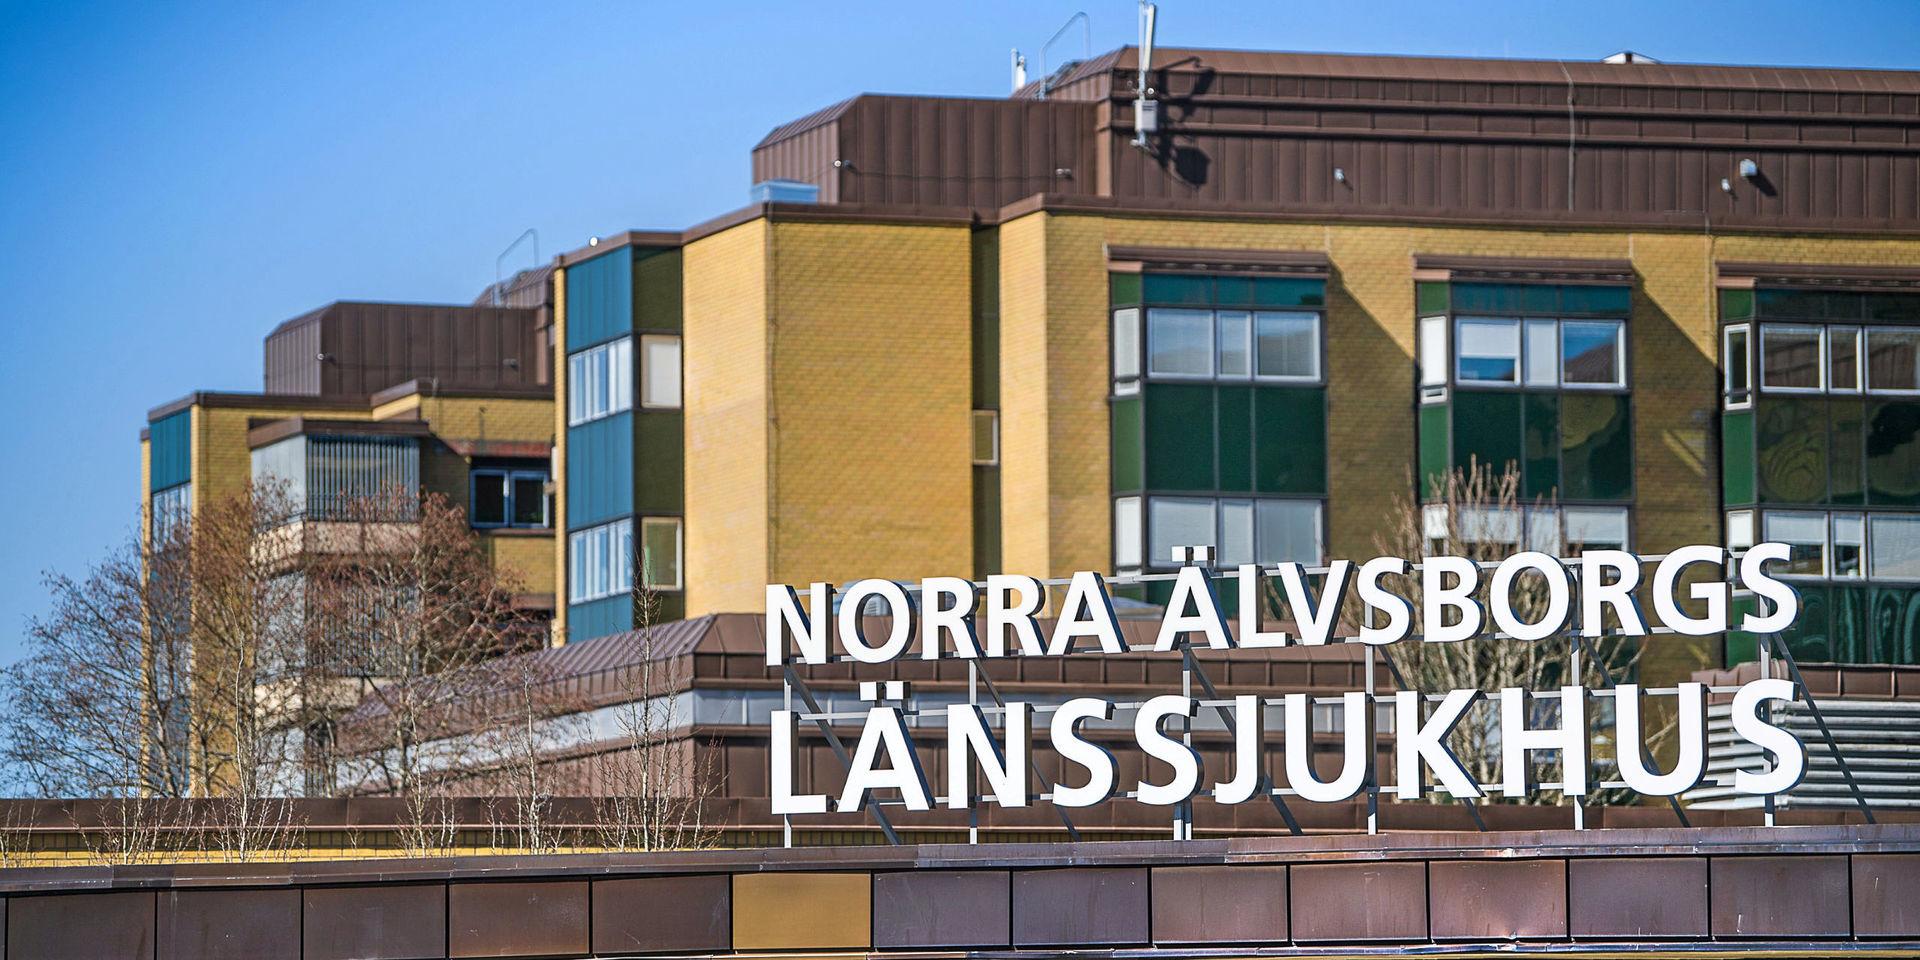 Sju personer intensivvårdades på tisdagsförmiddagen för covid-19 på Näl, en ökning med två från måndagen enligt sjukhusdirektören Björn Järbur.